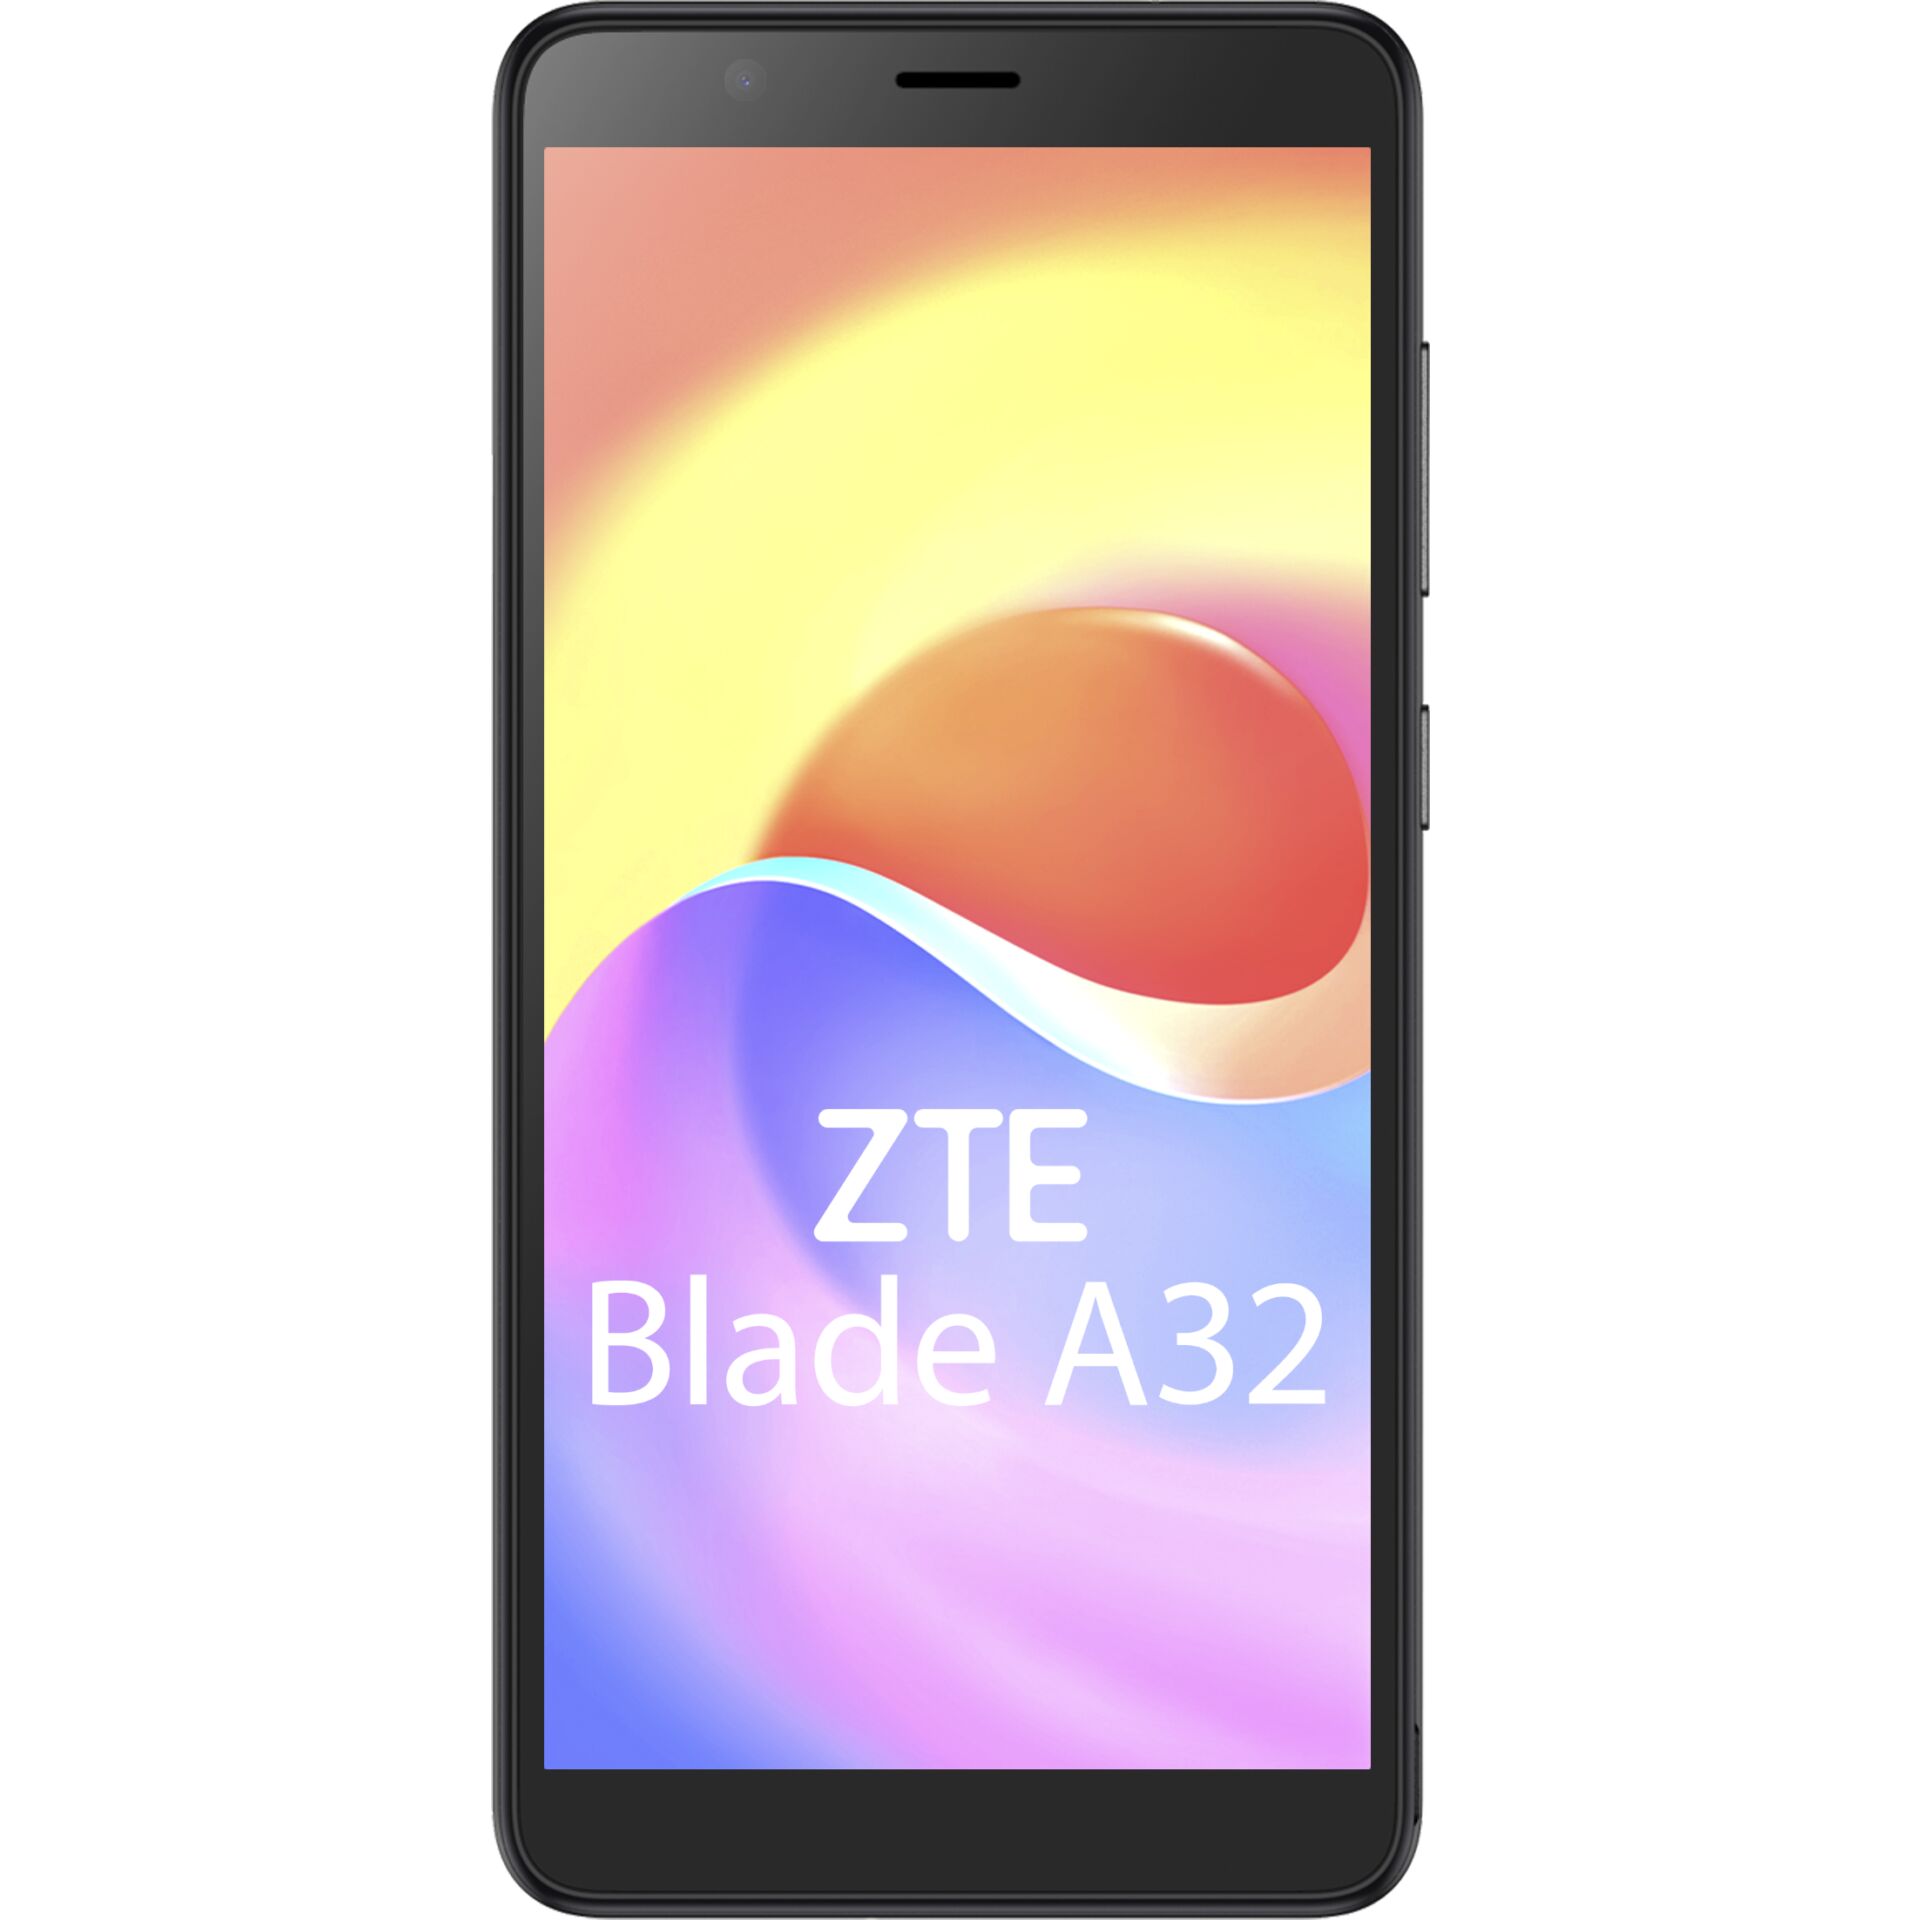 ZTE Blade A32 13,8 cm (5.45) Dual-SIM Android 11 Go Edition 4G 2 GB 32 GB 3000 mAh Schwarz